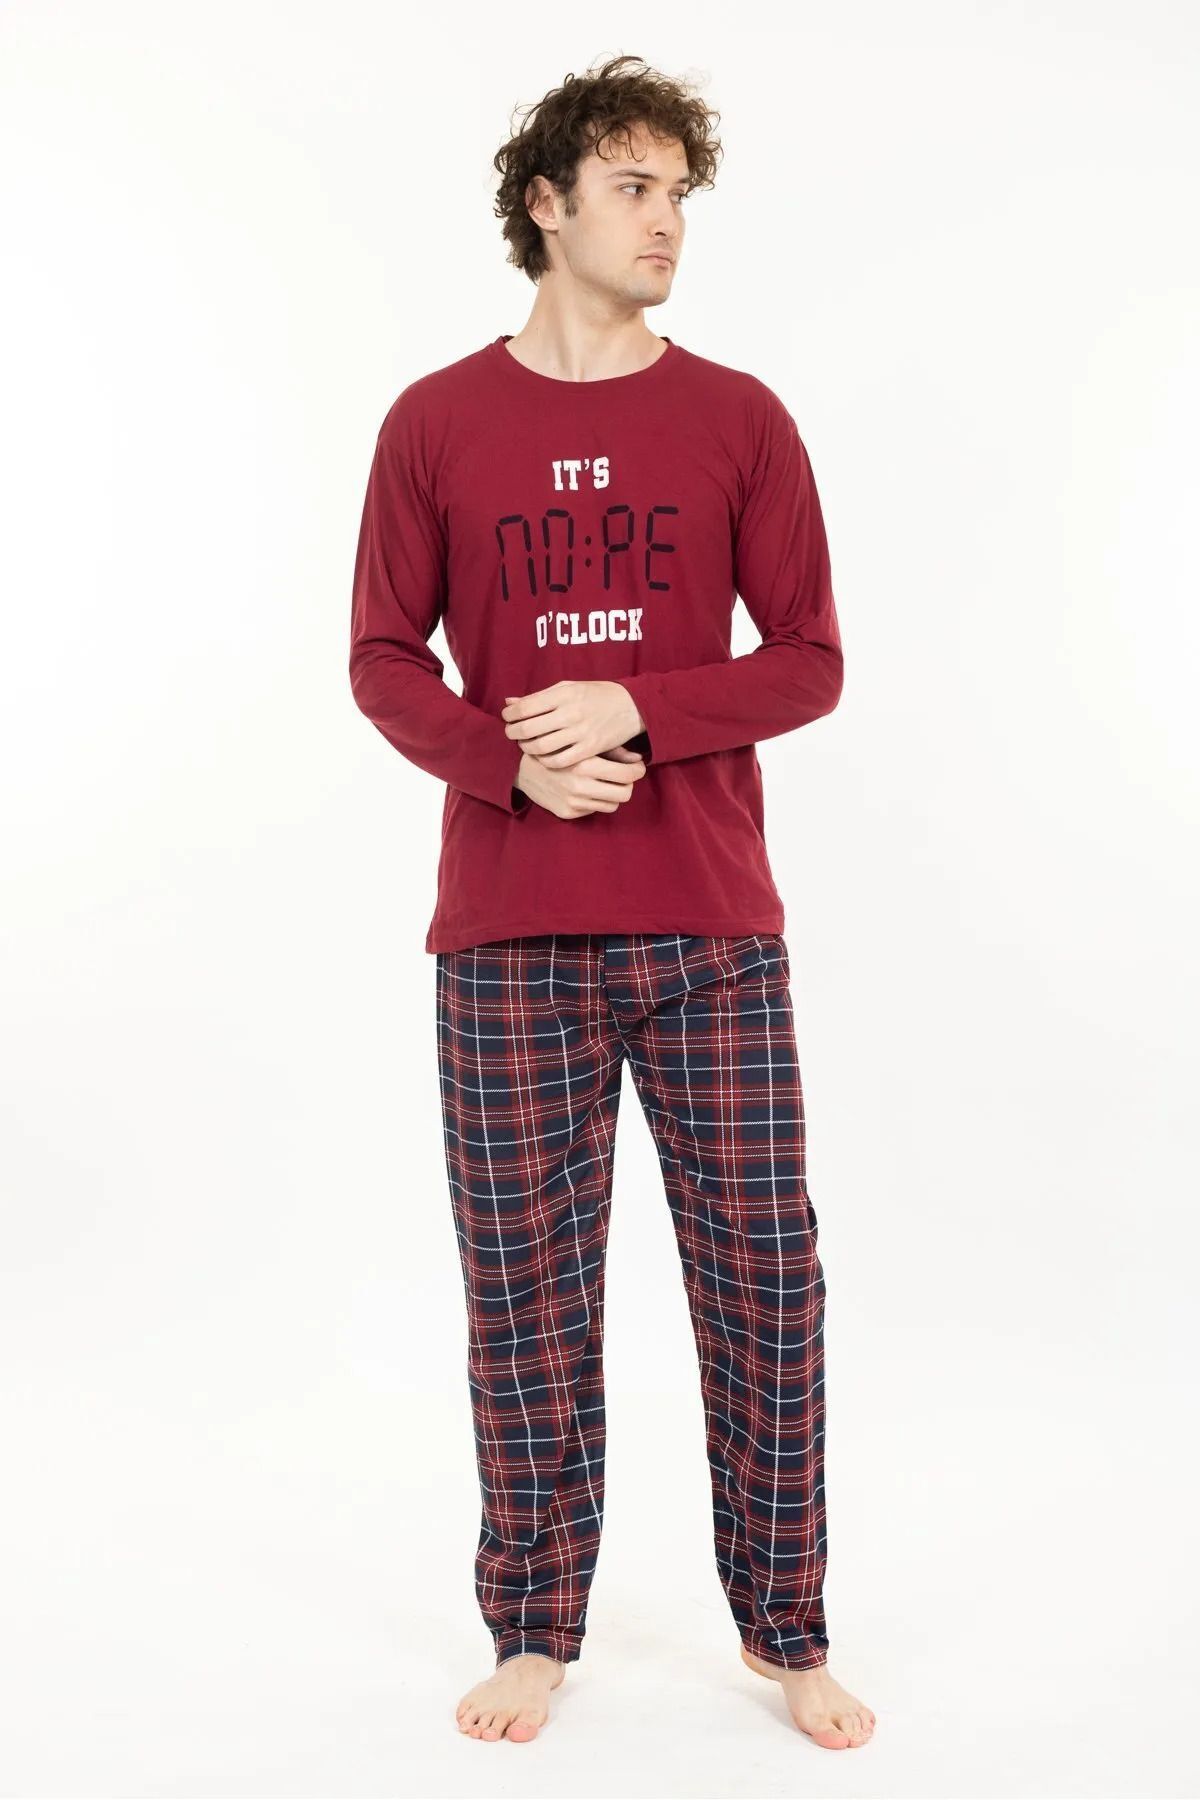 Leyal İç Giyim Erkek Pamuklu Cepsiz Ekose Desenli Pijama Altı Eşofman